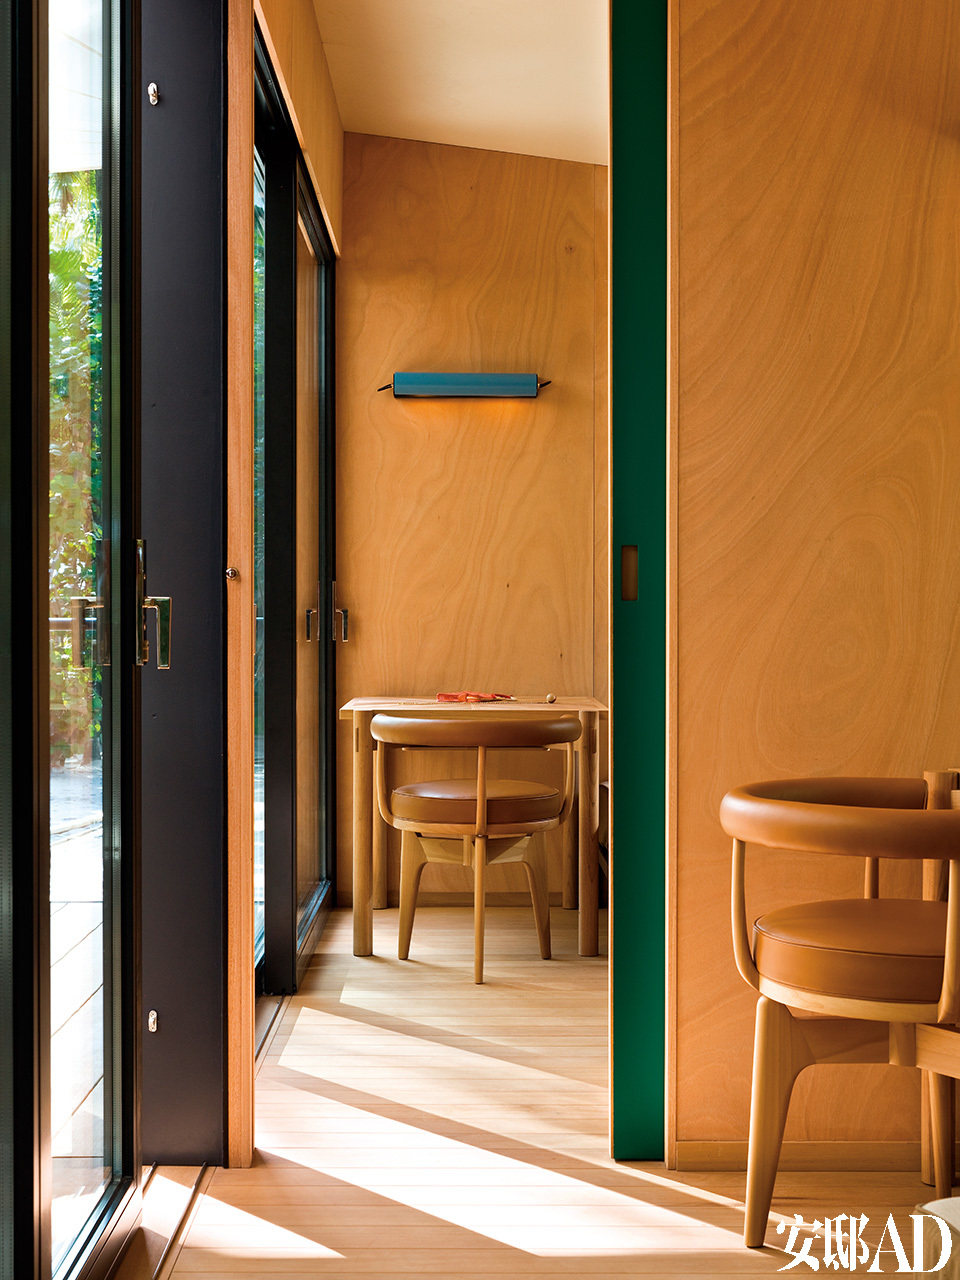 所有的房门都是可滑动玻璃门，通往露天室的房门处，房间与双层玻璃之间的隔墙用了红色或绿色的漆木。